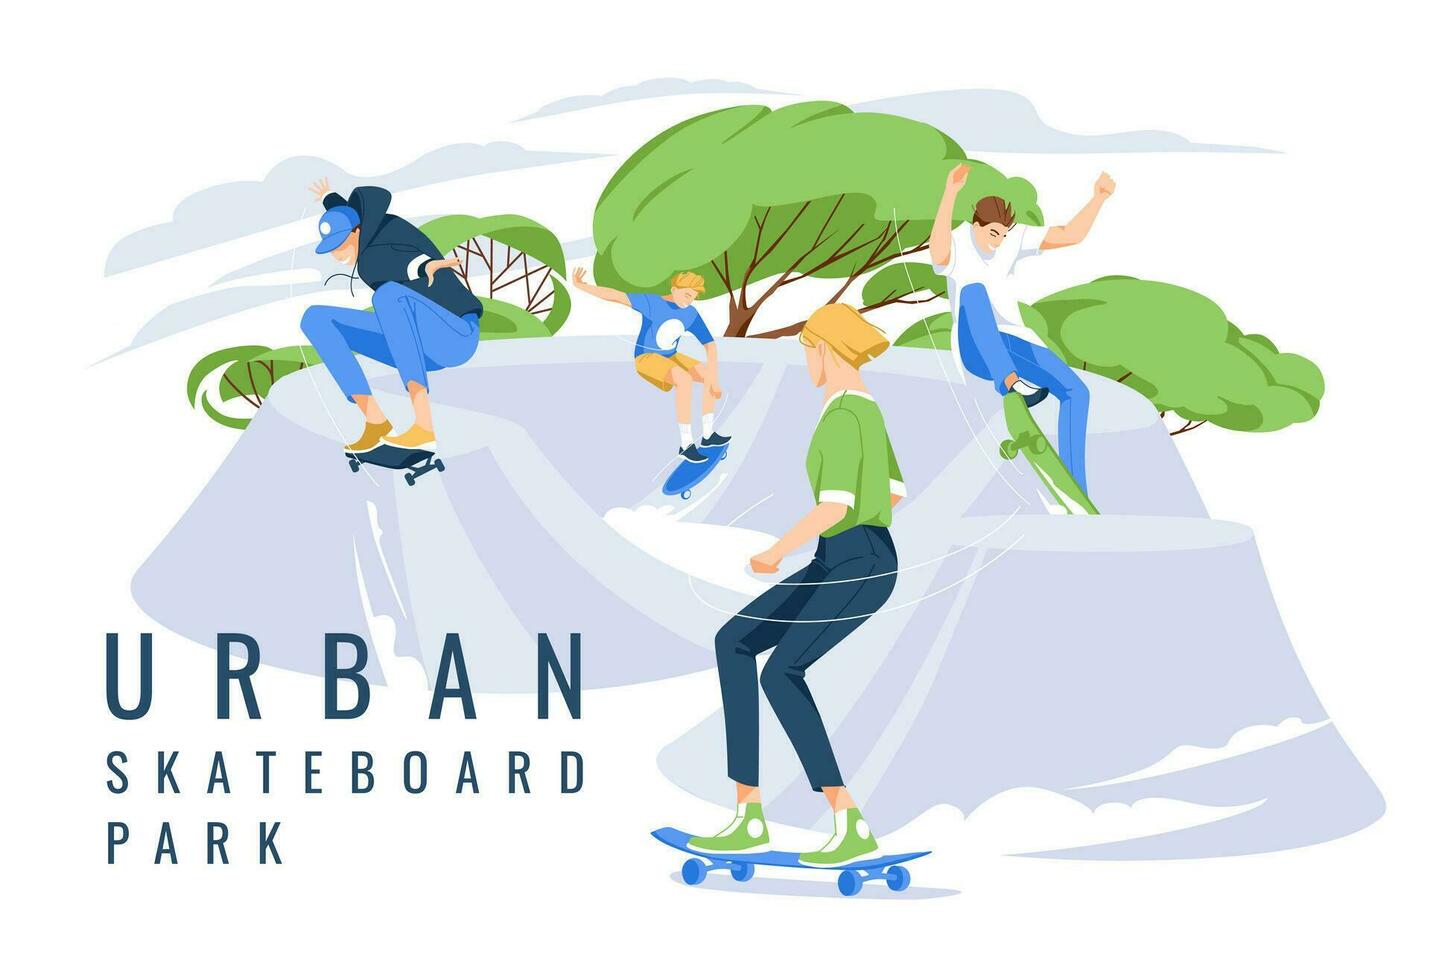 cuatro patinadores realizar trucos en un ciudad parque para patinadores. extremo Deportes. verano humor. plano vector ilustración